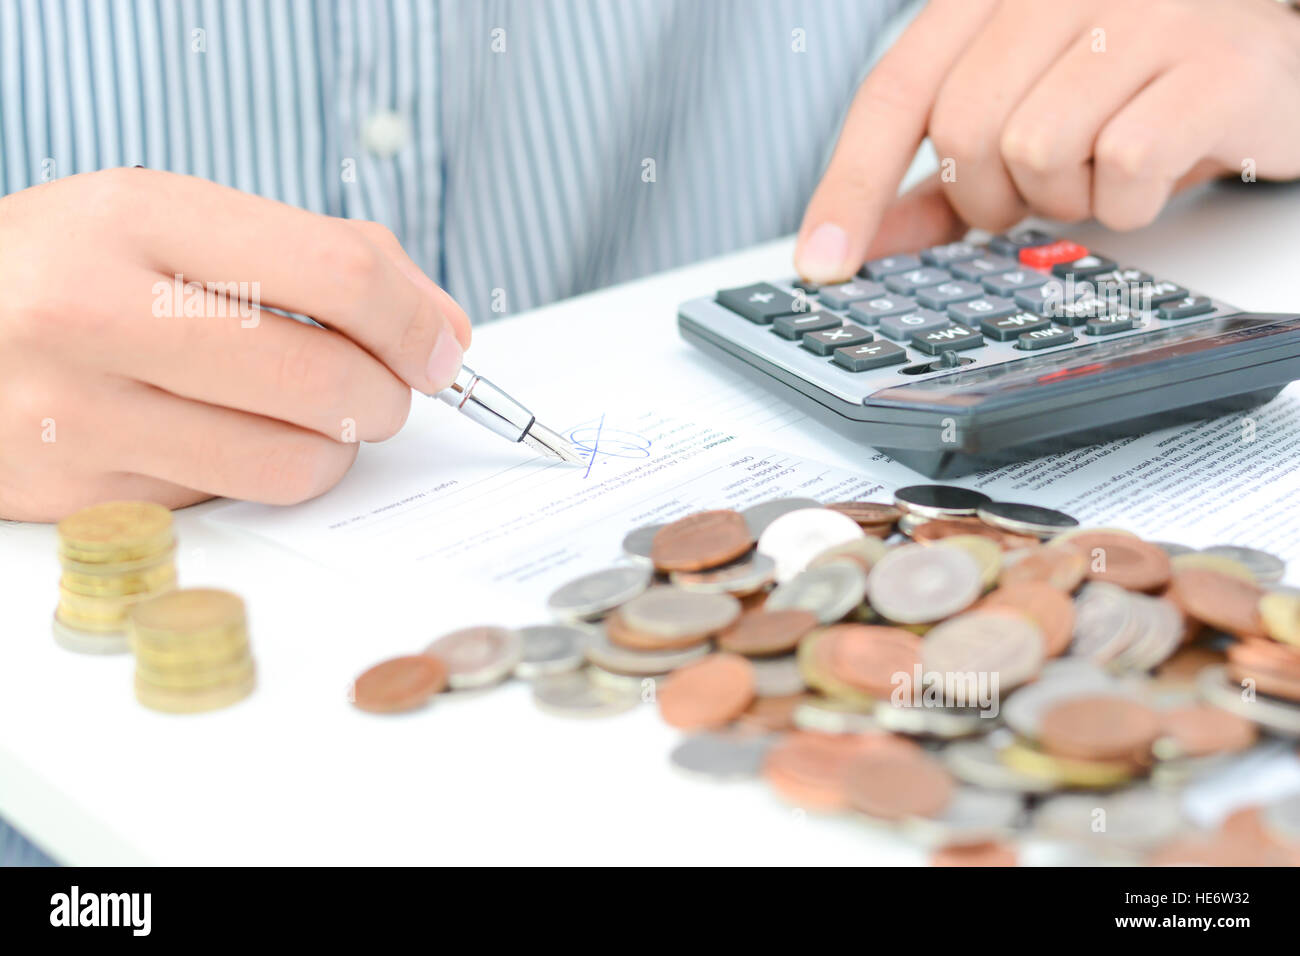 Calcul de l'impôt nouveau ou accord de prêt avec calculatrice de poche et des pièces Banque D'Images